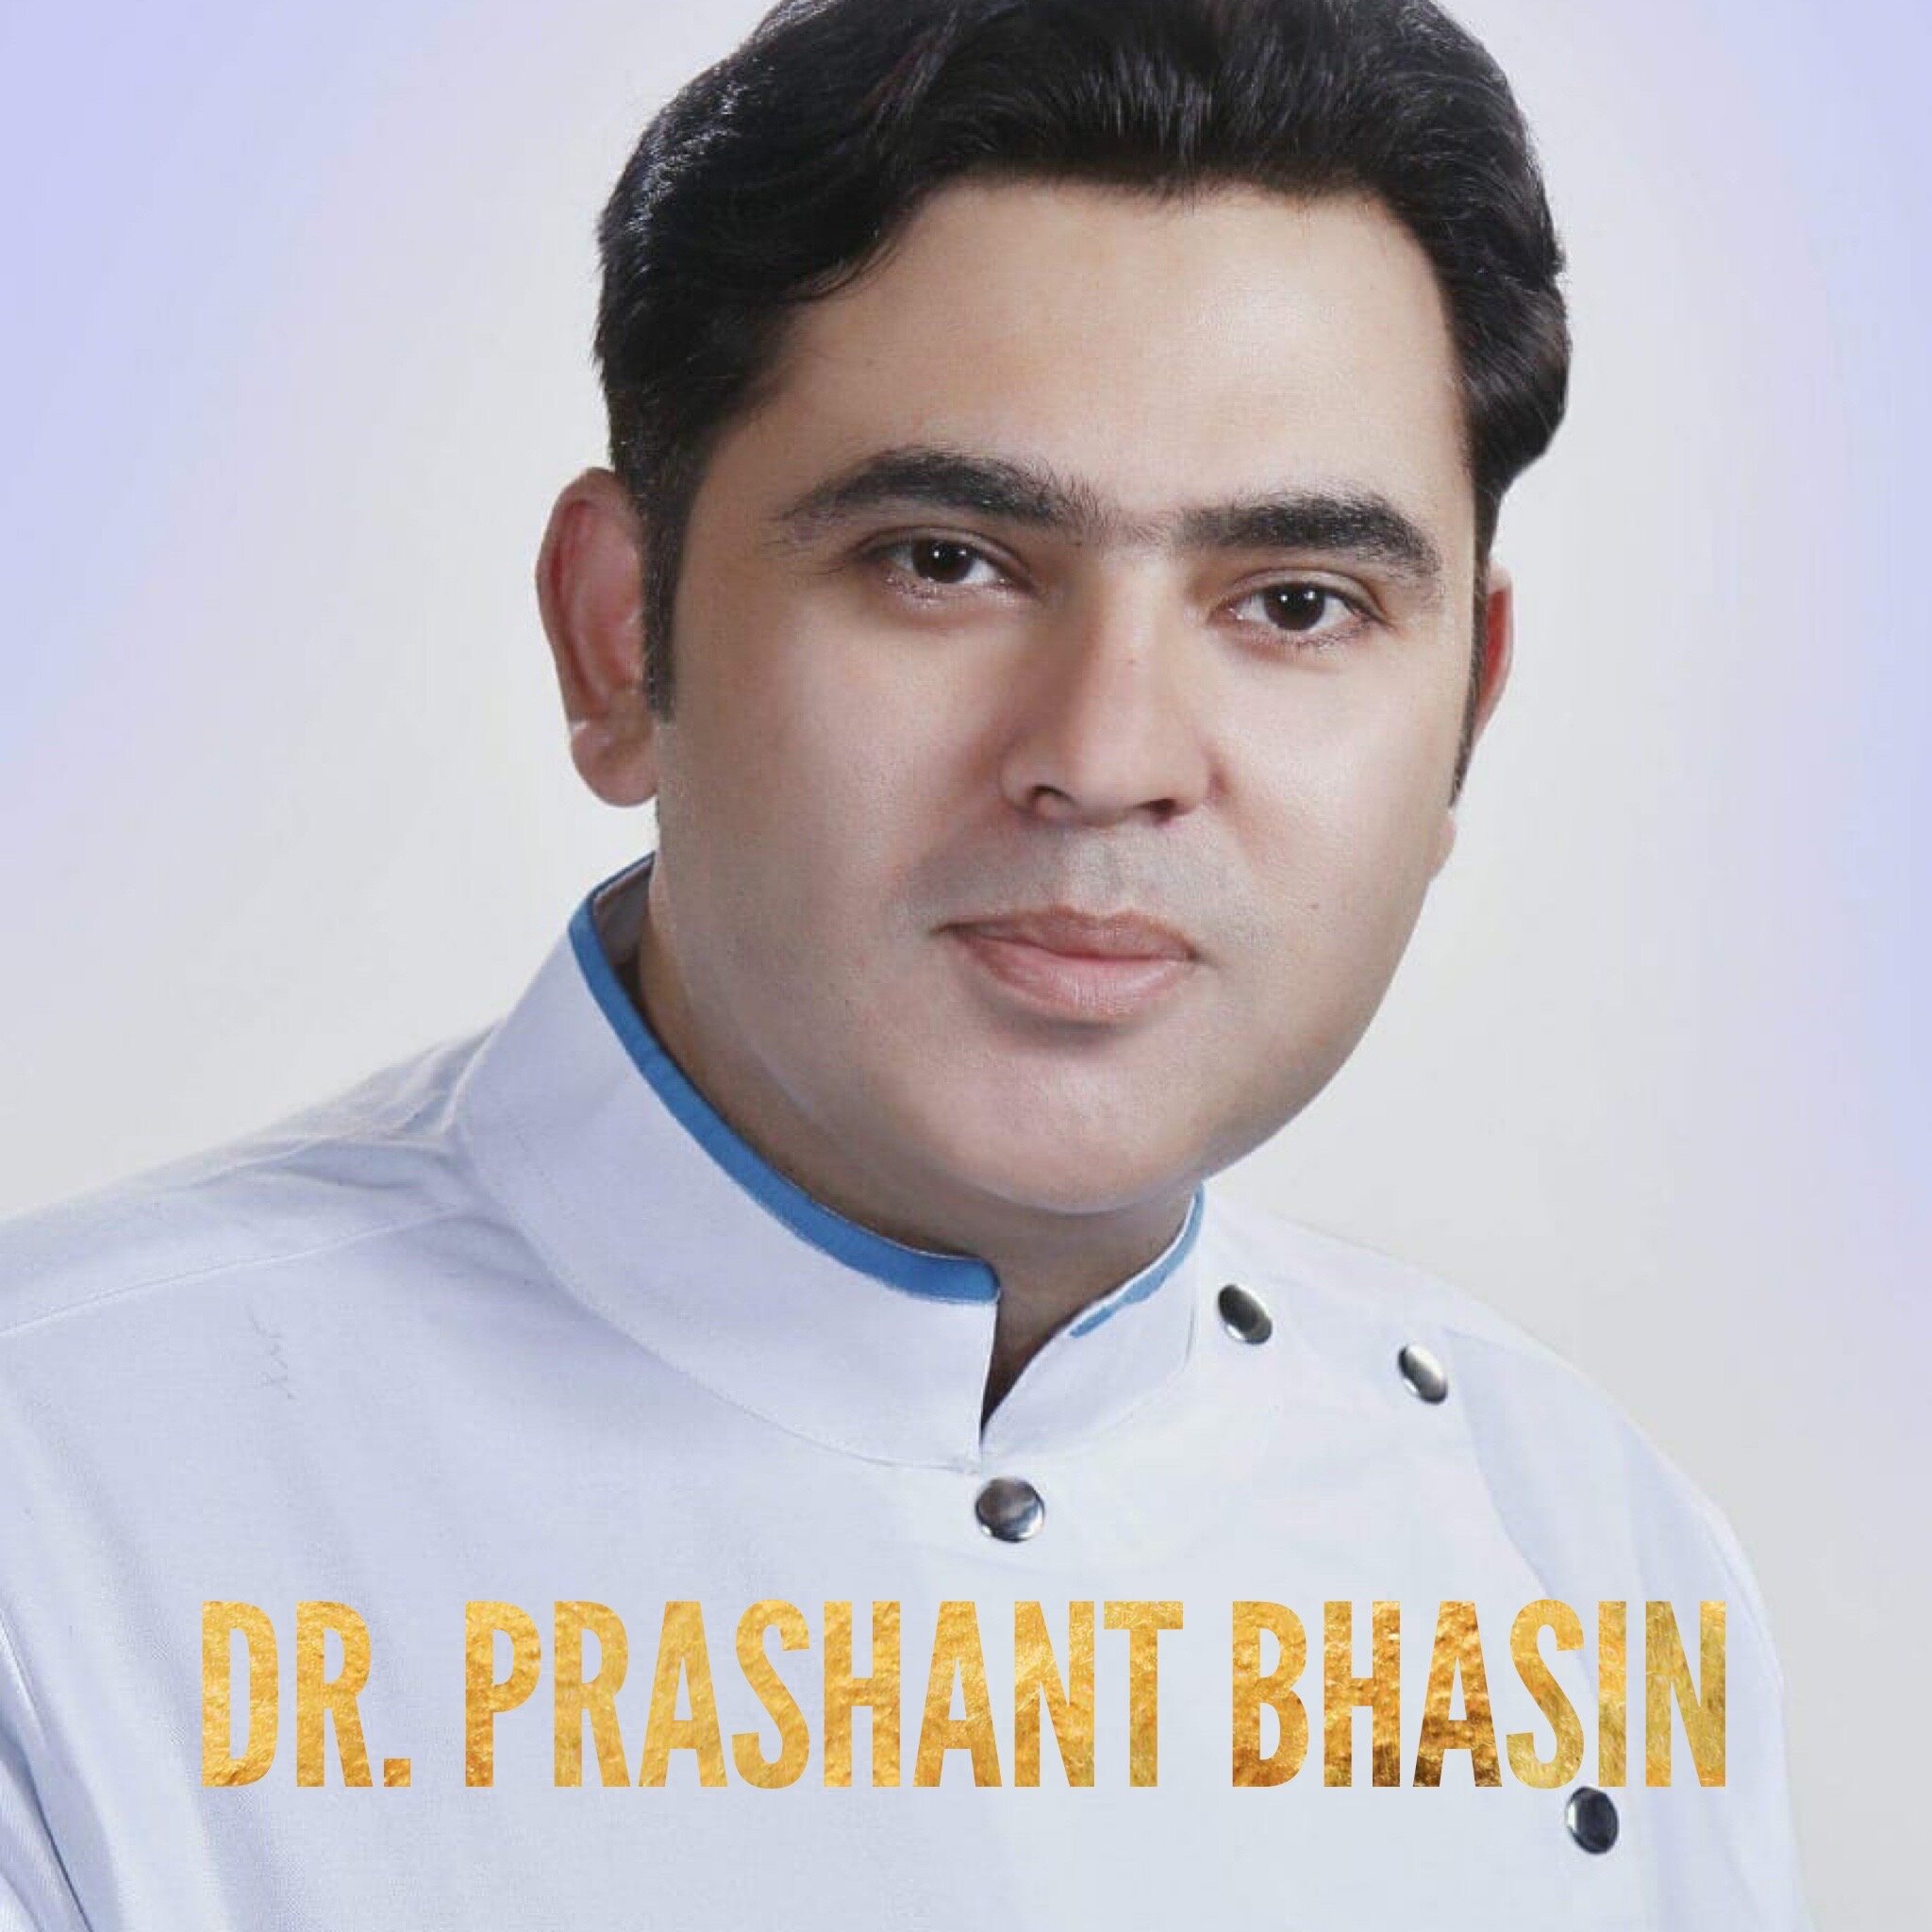 Prashant Bhasin 1.JPG